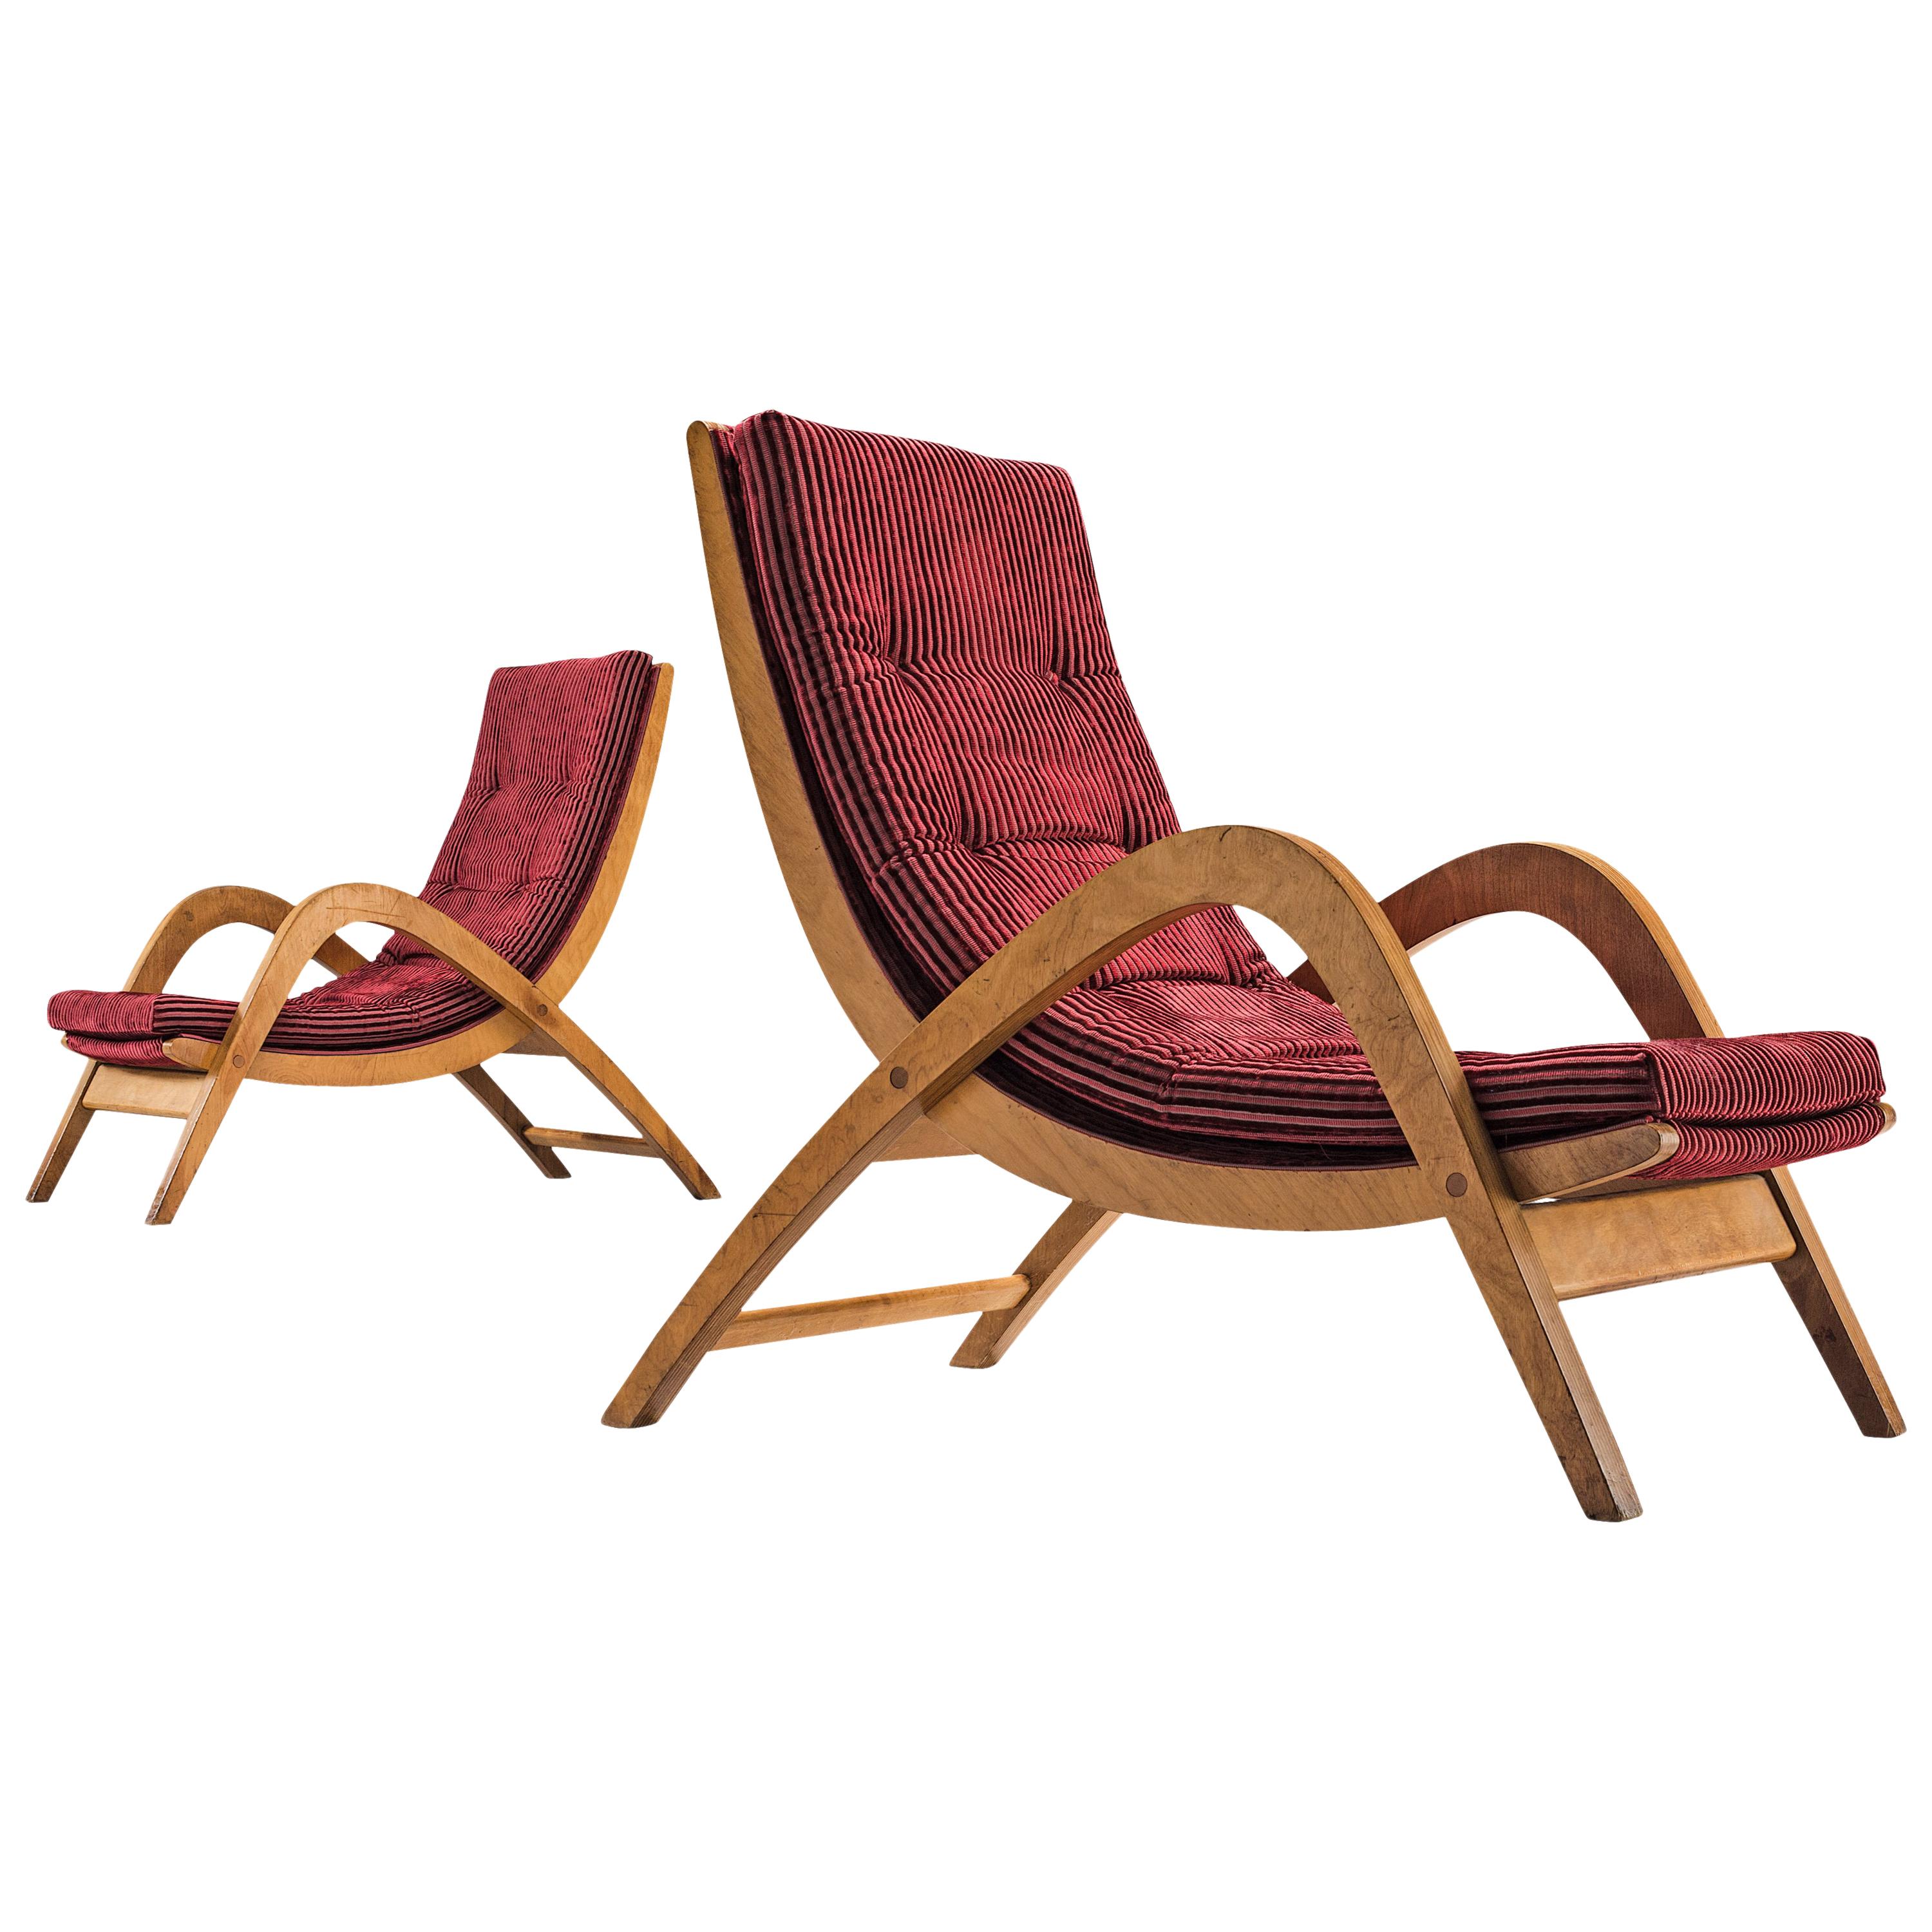 Rare Lounge Chairs by Neil Morris in Velvet Burgundy Upholstery